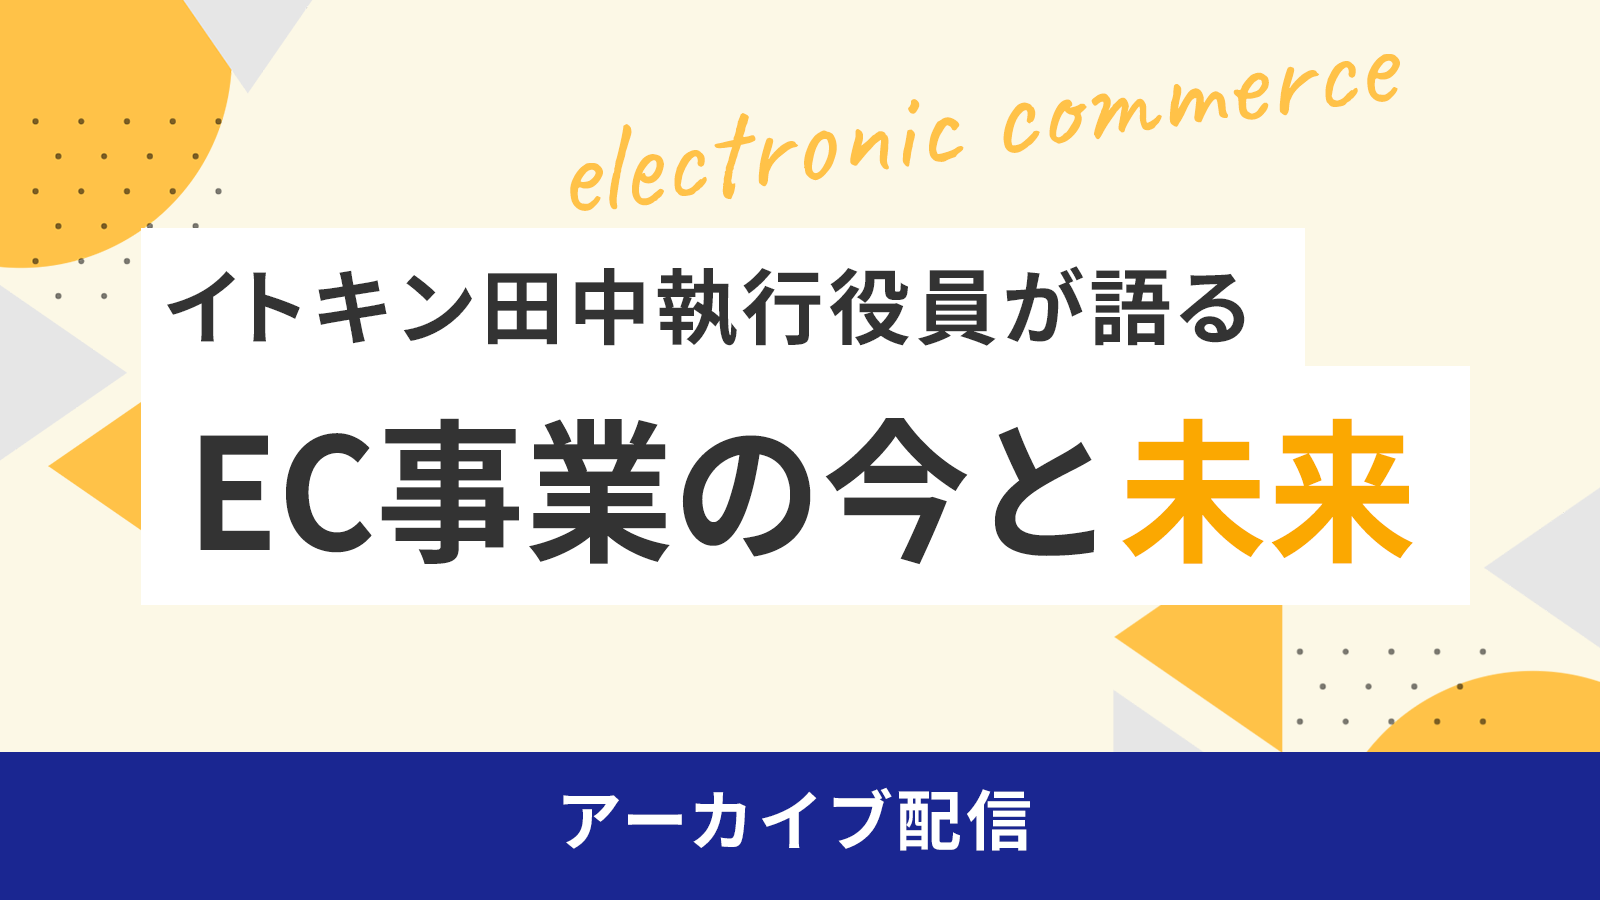 イトキン田中執行役員が語る「EC事業の今と未来」 アーカイブ